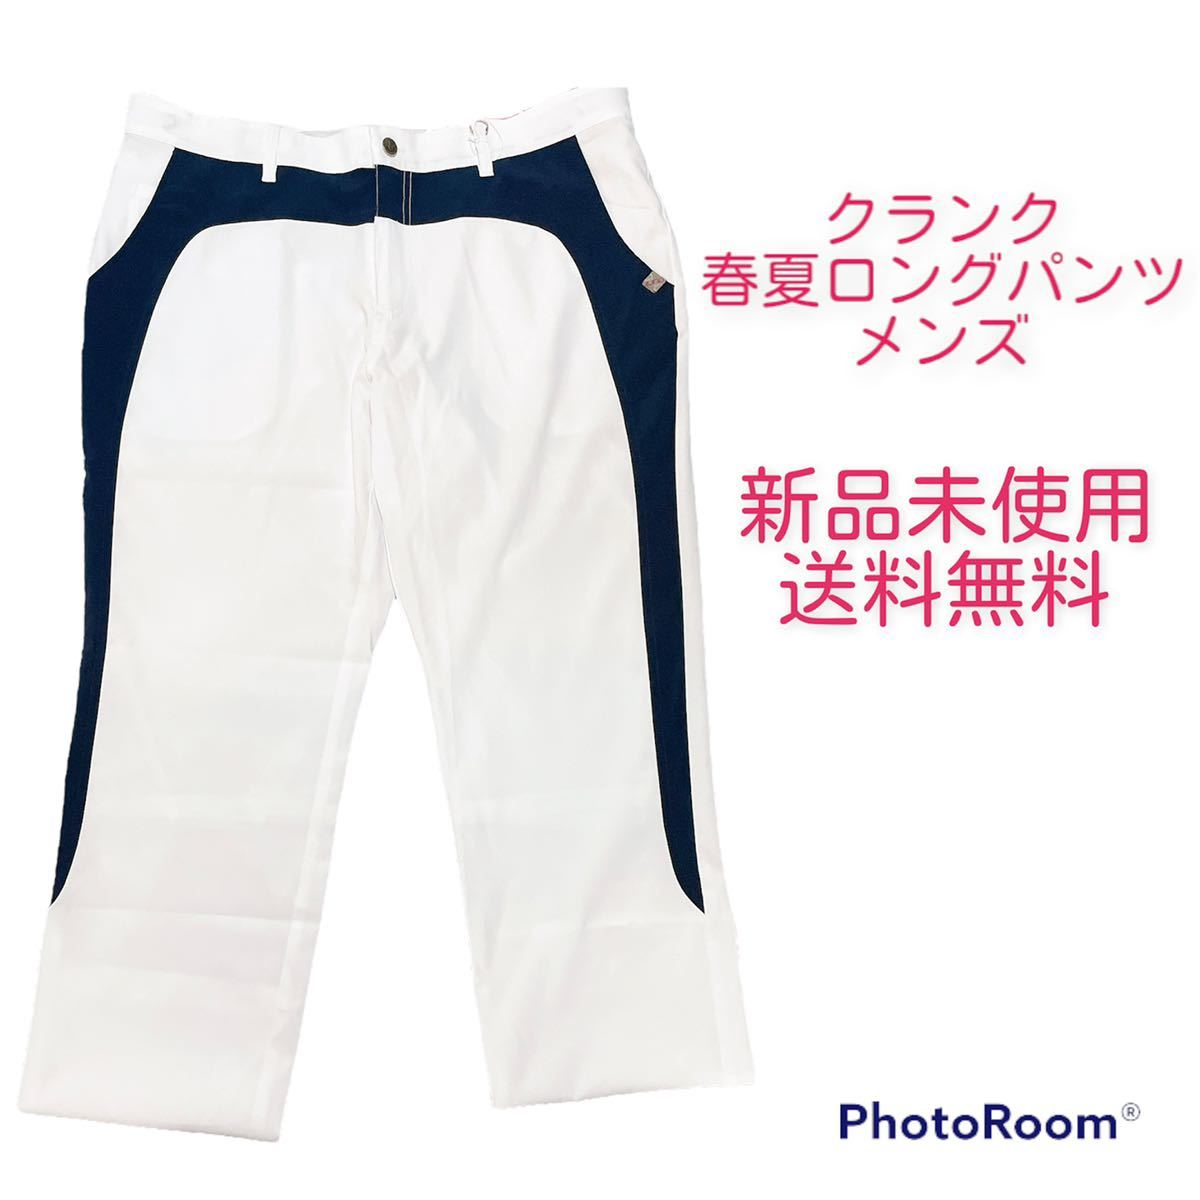 2124円 【58%OFF!】 クランク 春夏ロングパンツ ゴルフウェア メンズ M サイズ